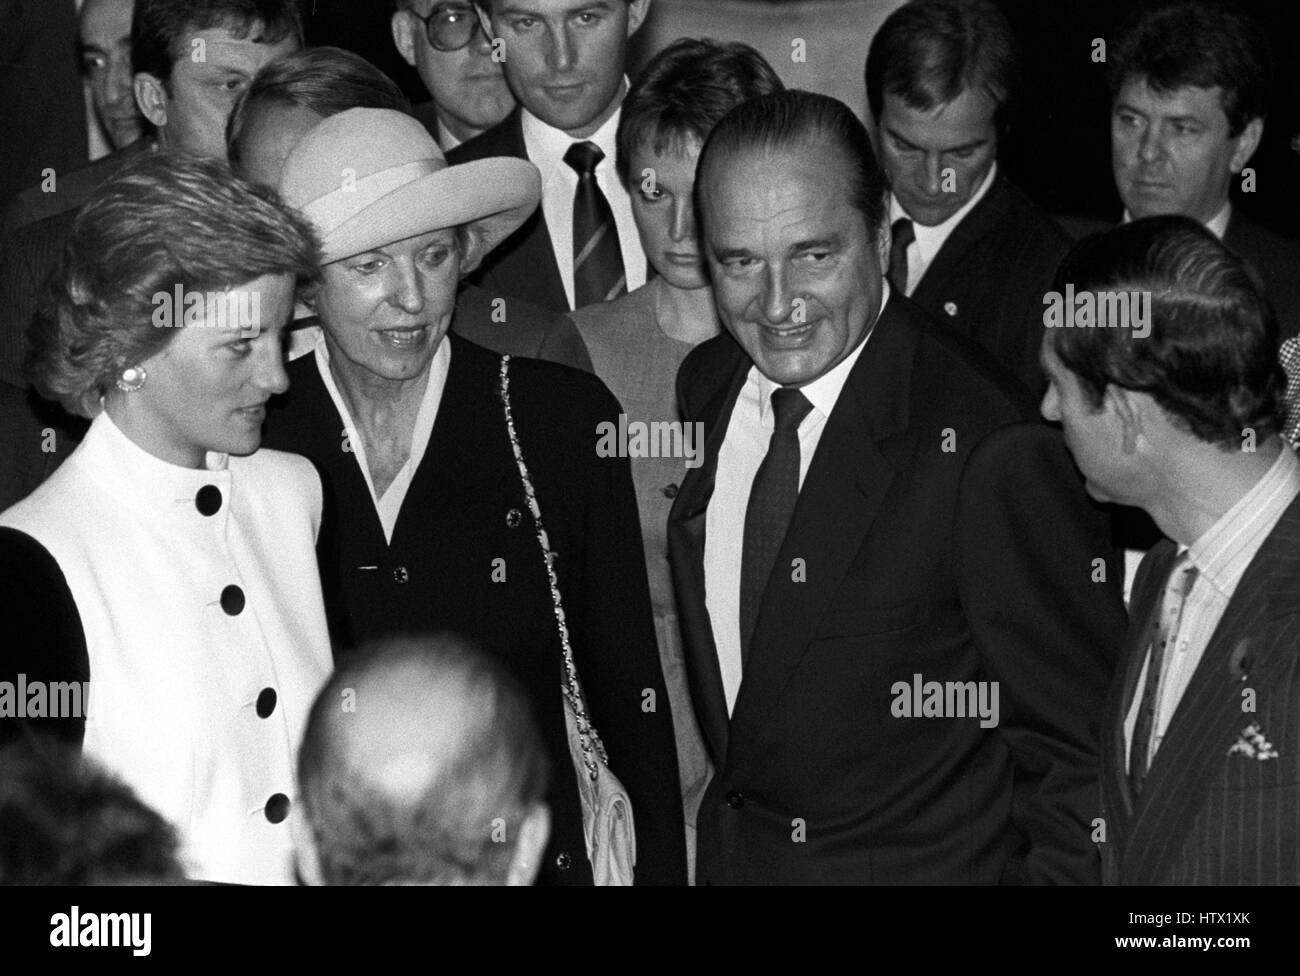 Le Prince et la princesse de Galles avec Jacques Chirac, le Maire de Paris, et son épouse Madame Bernadette Chirac (wearing hat), au cours d'une réception à l'Hôtel de Ville de Paris. Banque D'Images